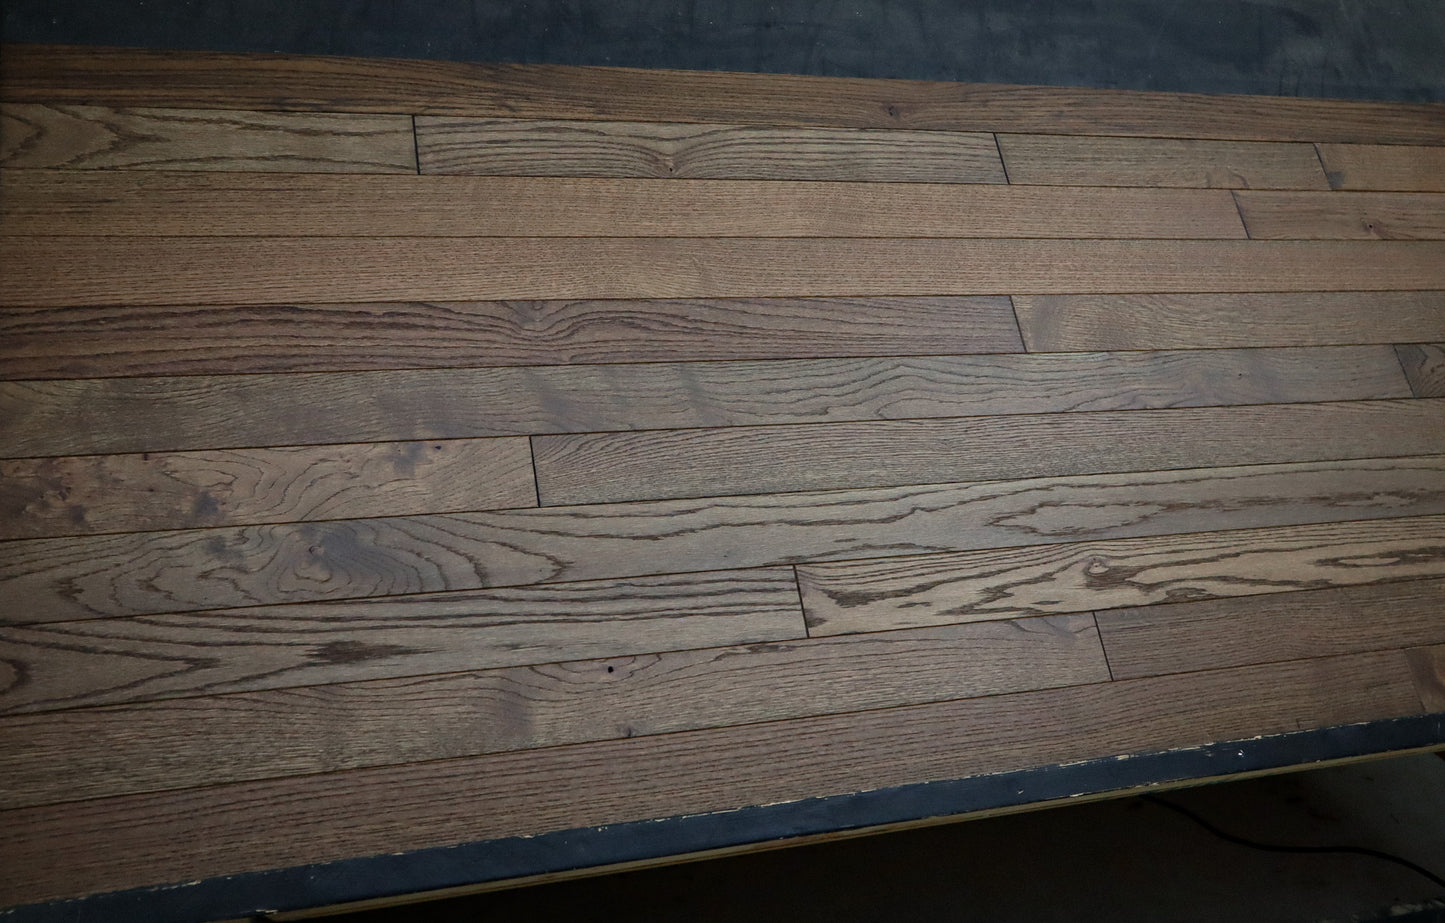 3 1/4 x 3/4 Solid Red Oak Windsor Stain Prefinished Hardwood Flooring